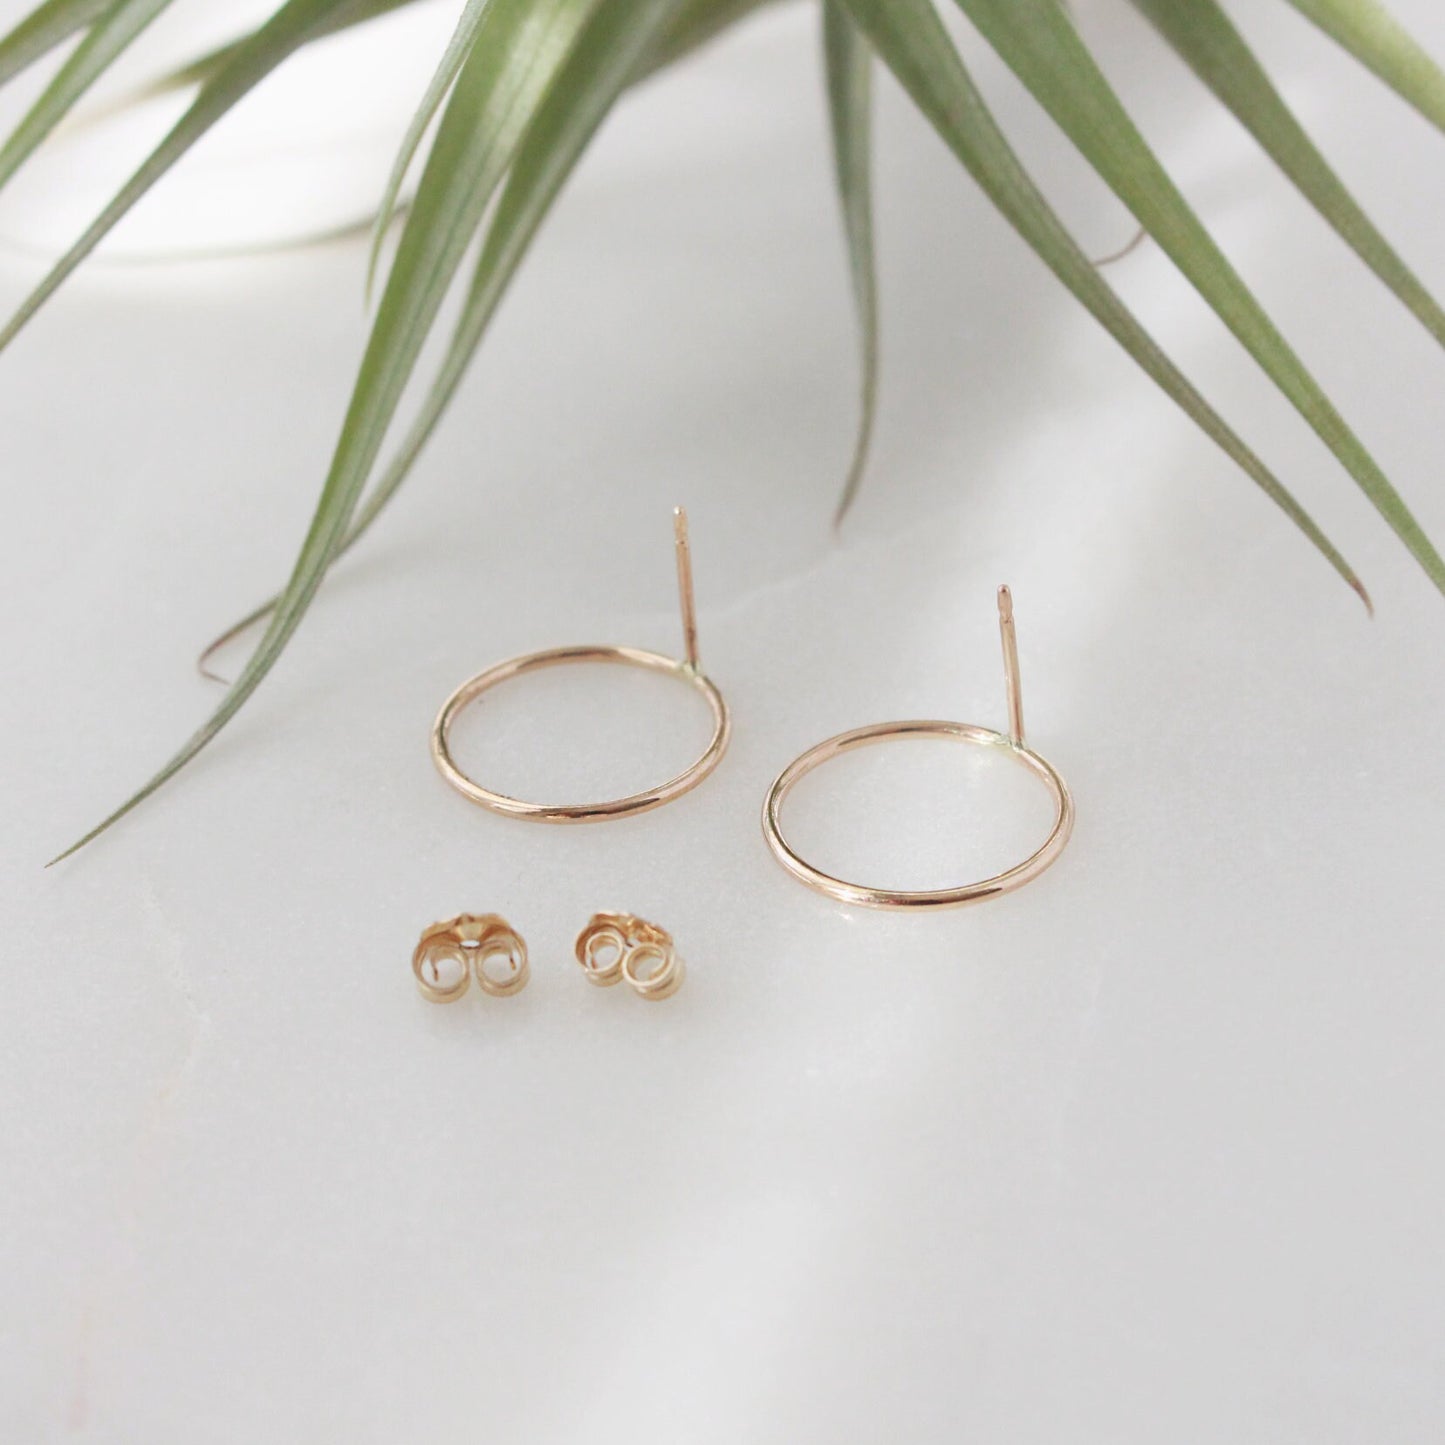 Gold Circle Stud Earrings(Medium) - 14K Gold Filled, 15mm O Ring Circle, 18ga